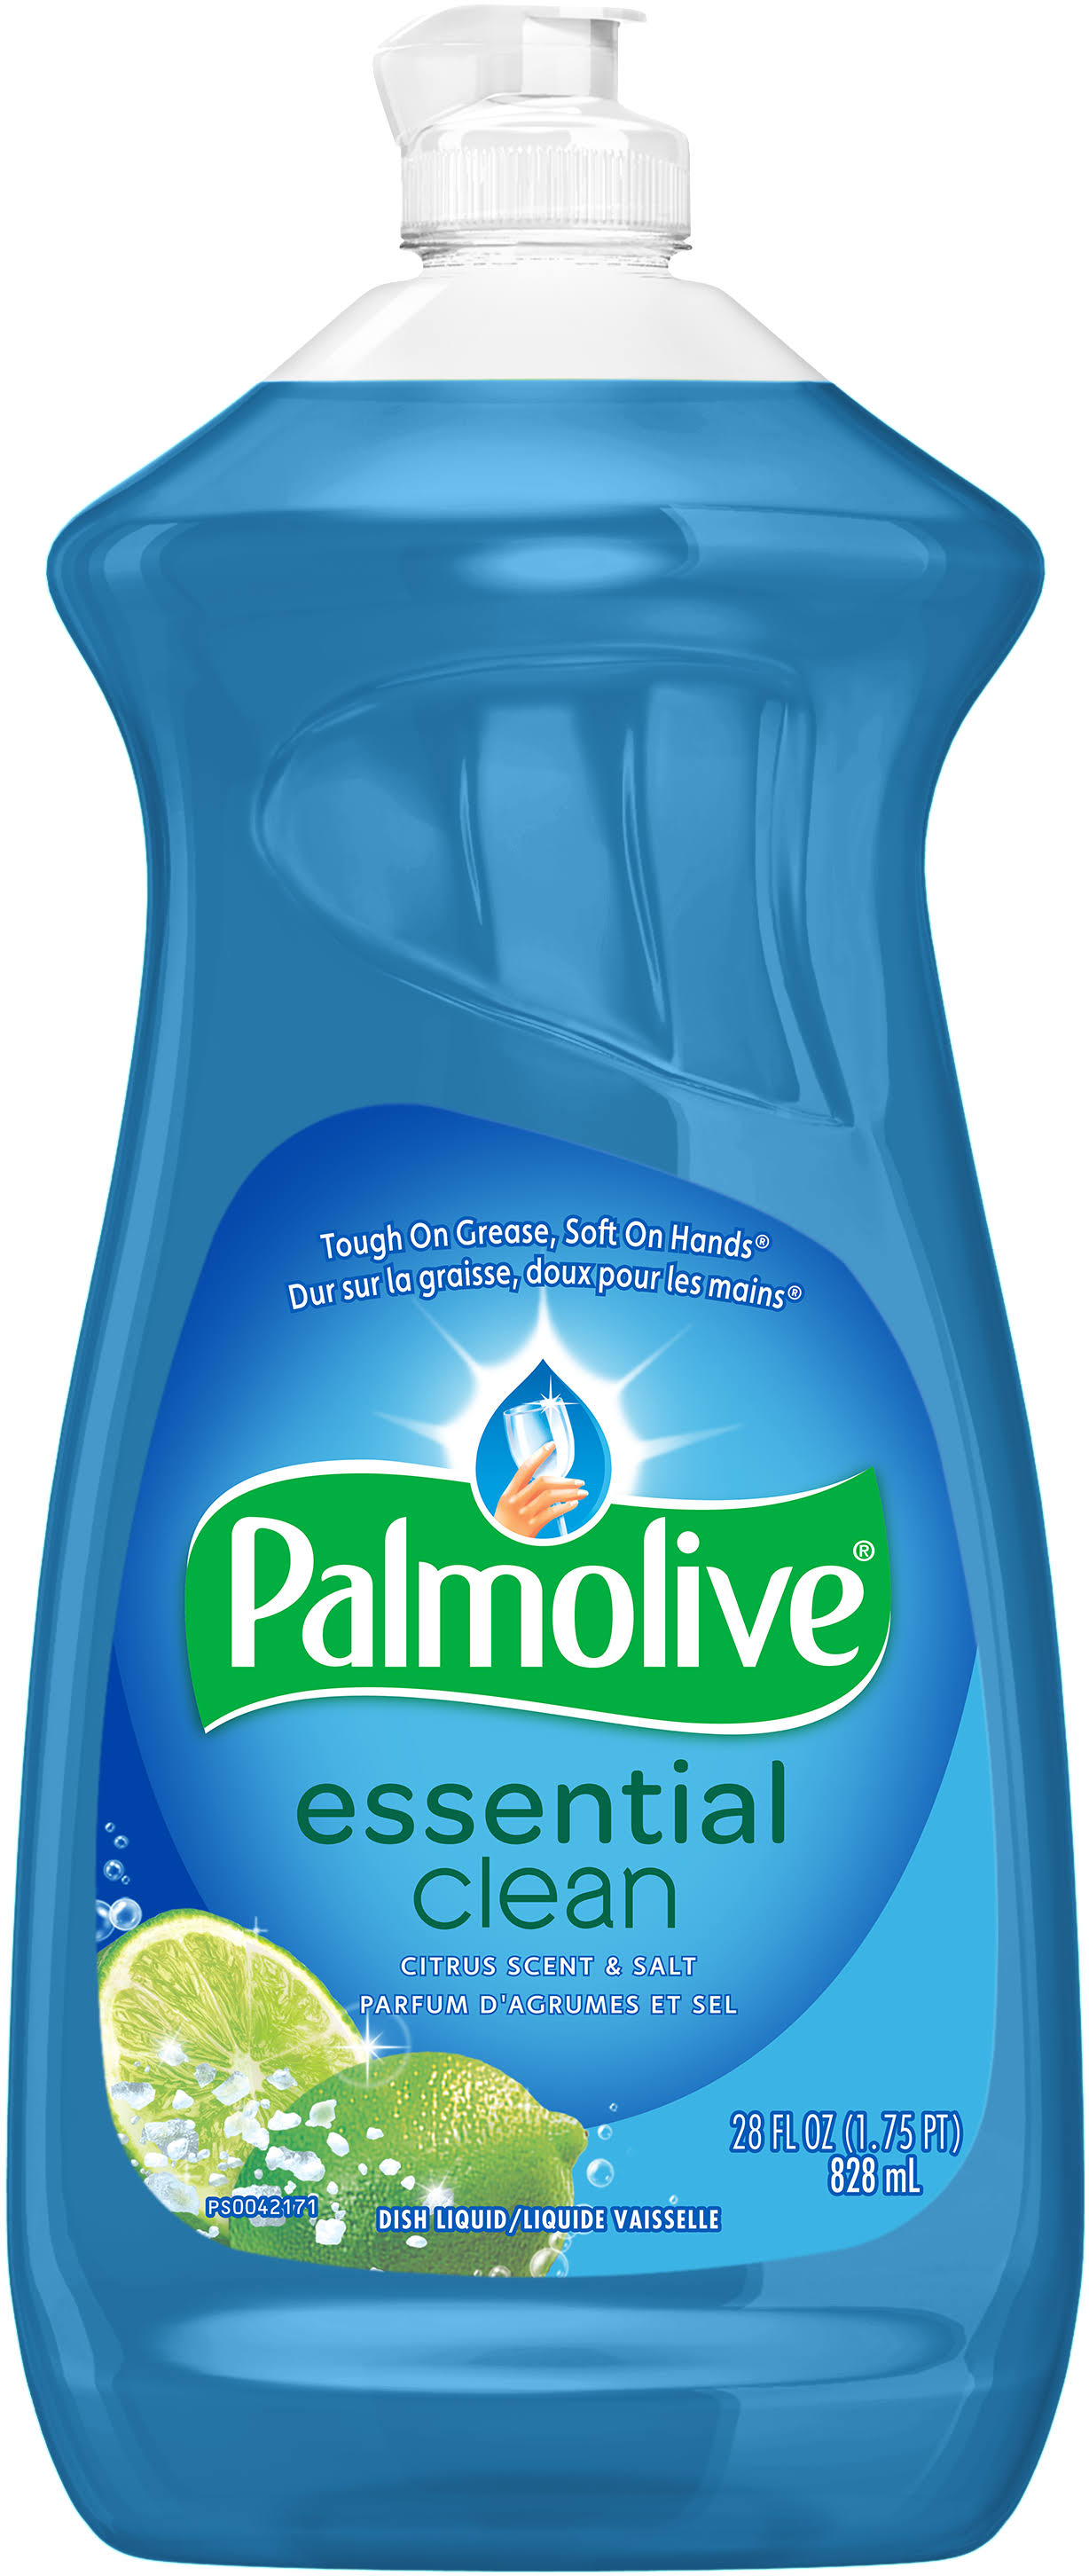 Palmolive Liquid Soap - 28 fl oz